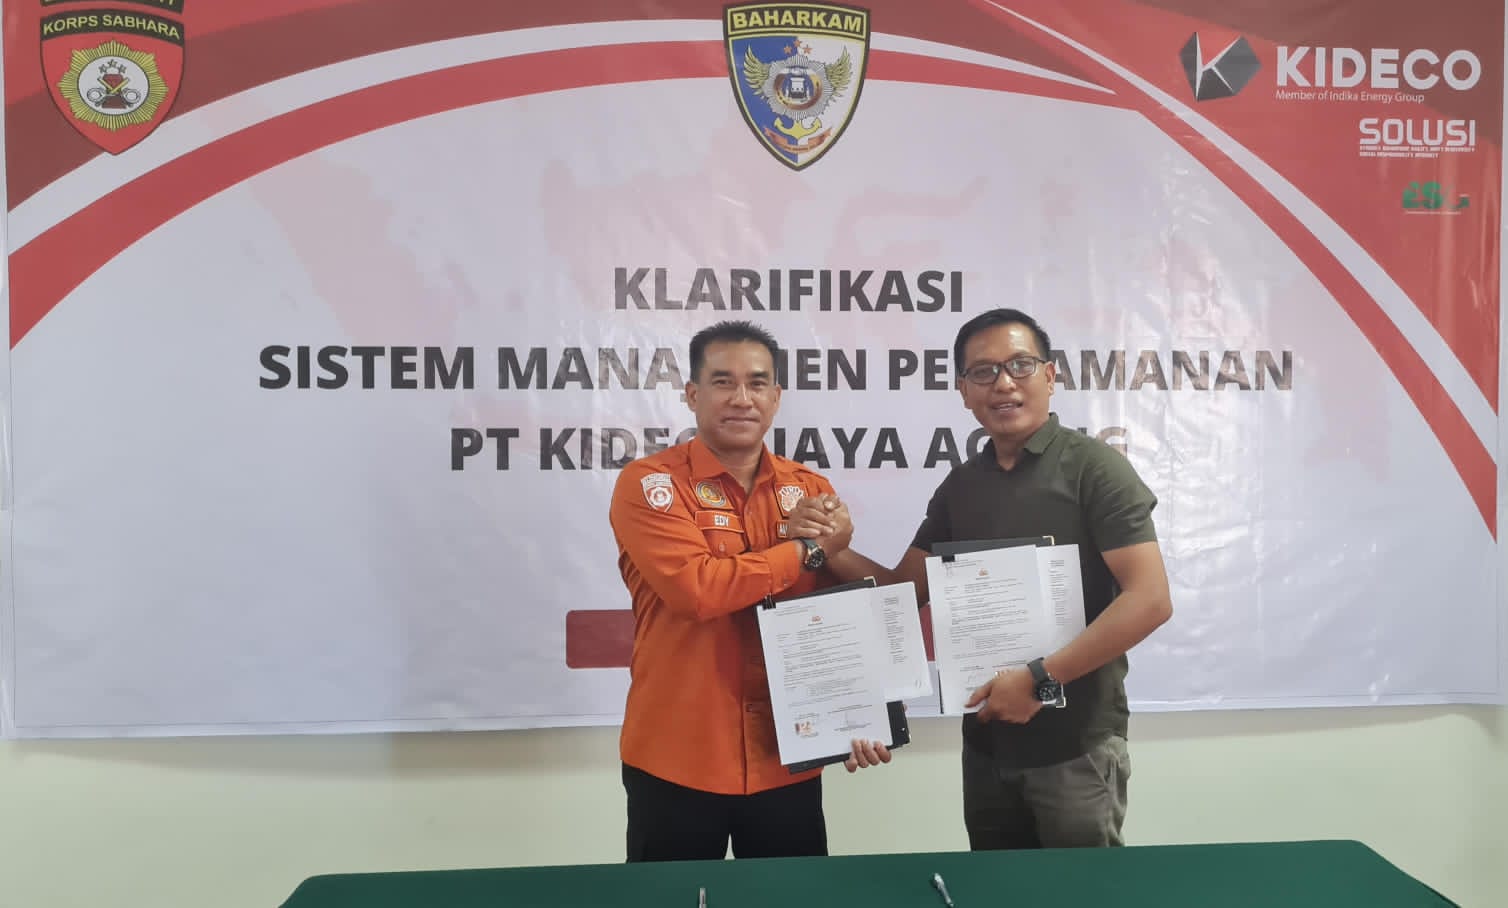 Baharkam Polri Lakukan Audit Sistem Manajemen Pengamanan di PT. Kideco Jaya Agung